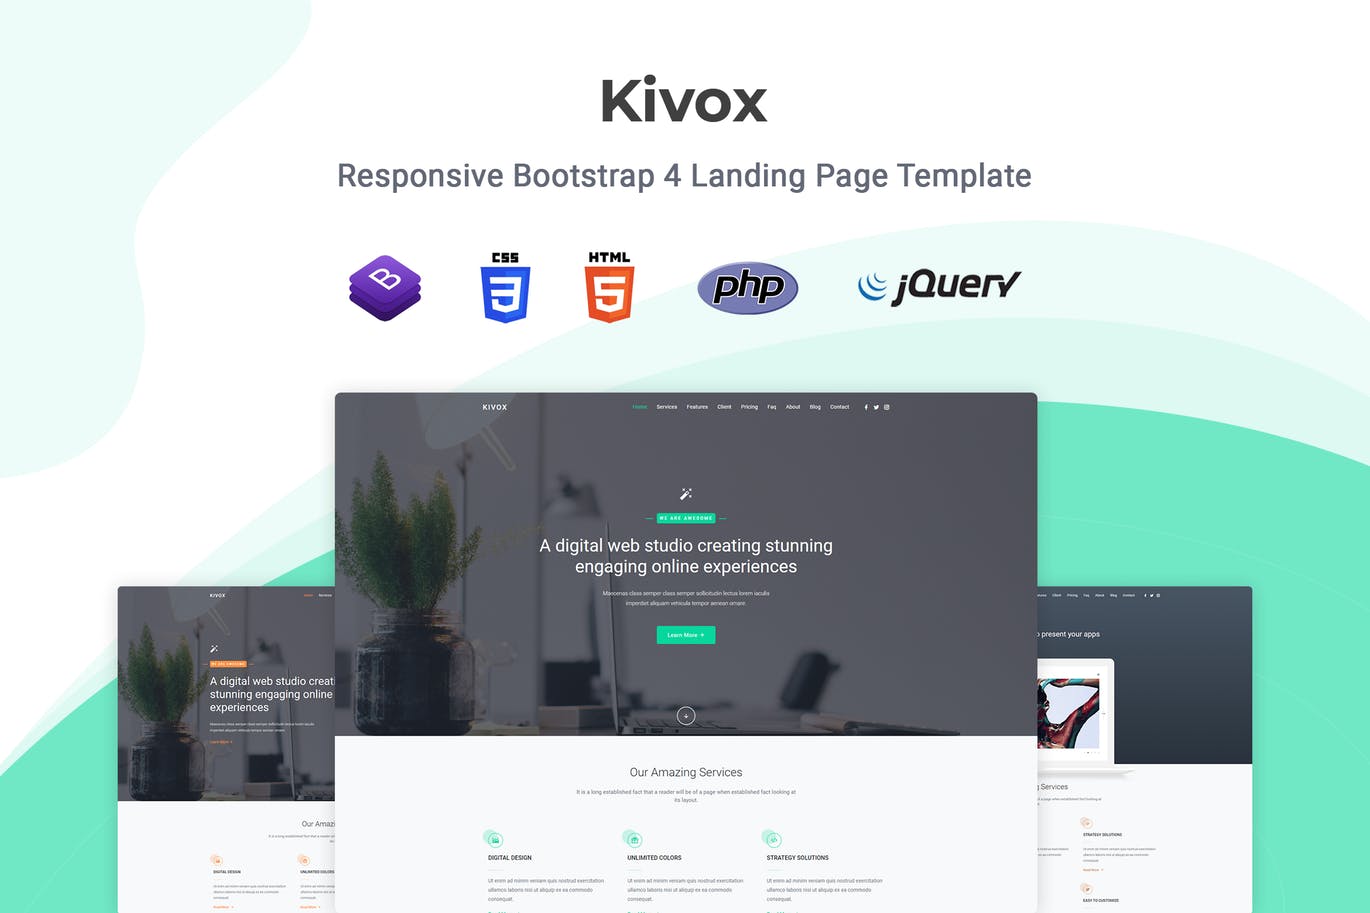 互联网服务企业官网着陆页HTML模板素材库精选 Kivox – Responsive Landing Page Template插图